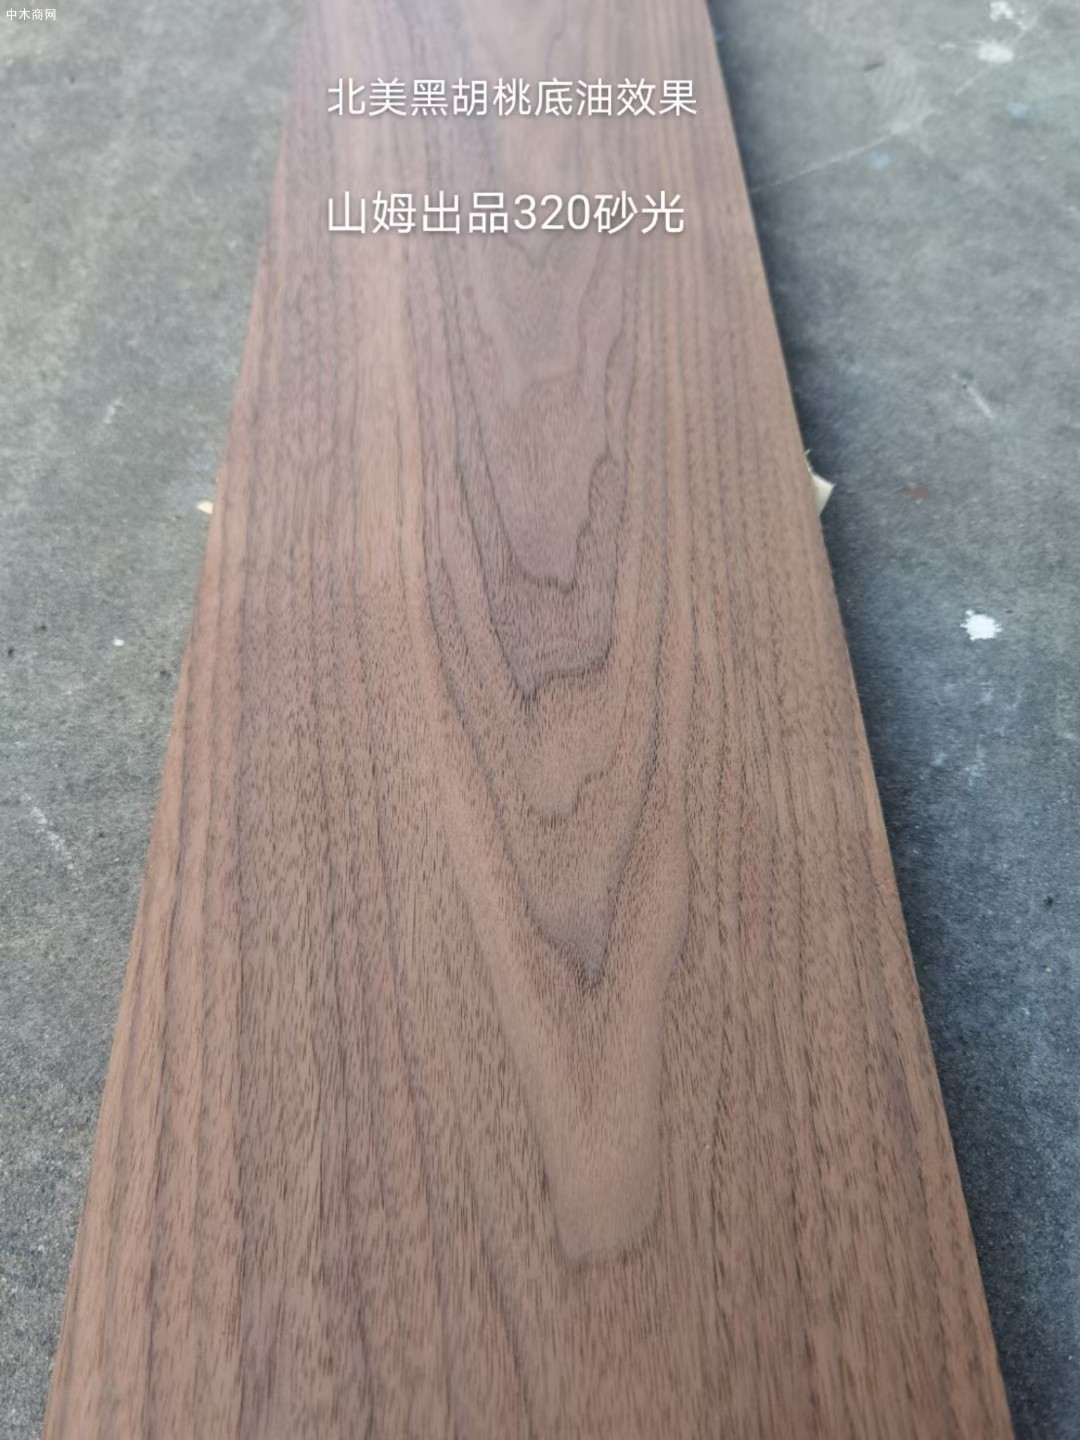 美国黑胡桃木实木家具板材高清图片求购